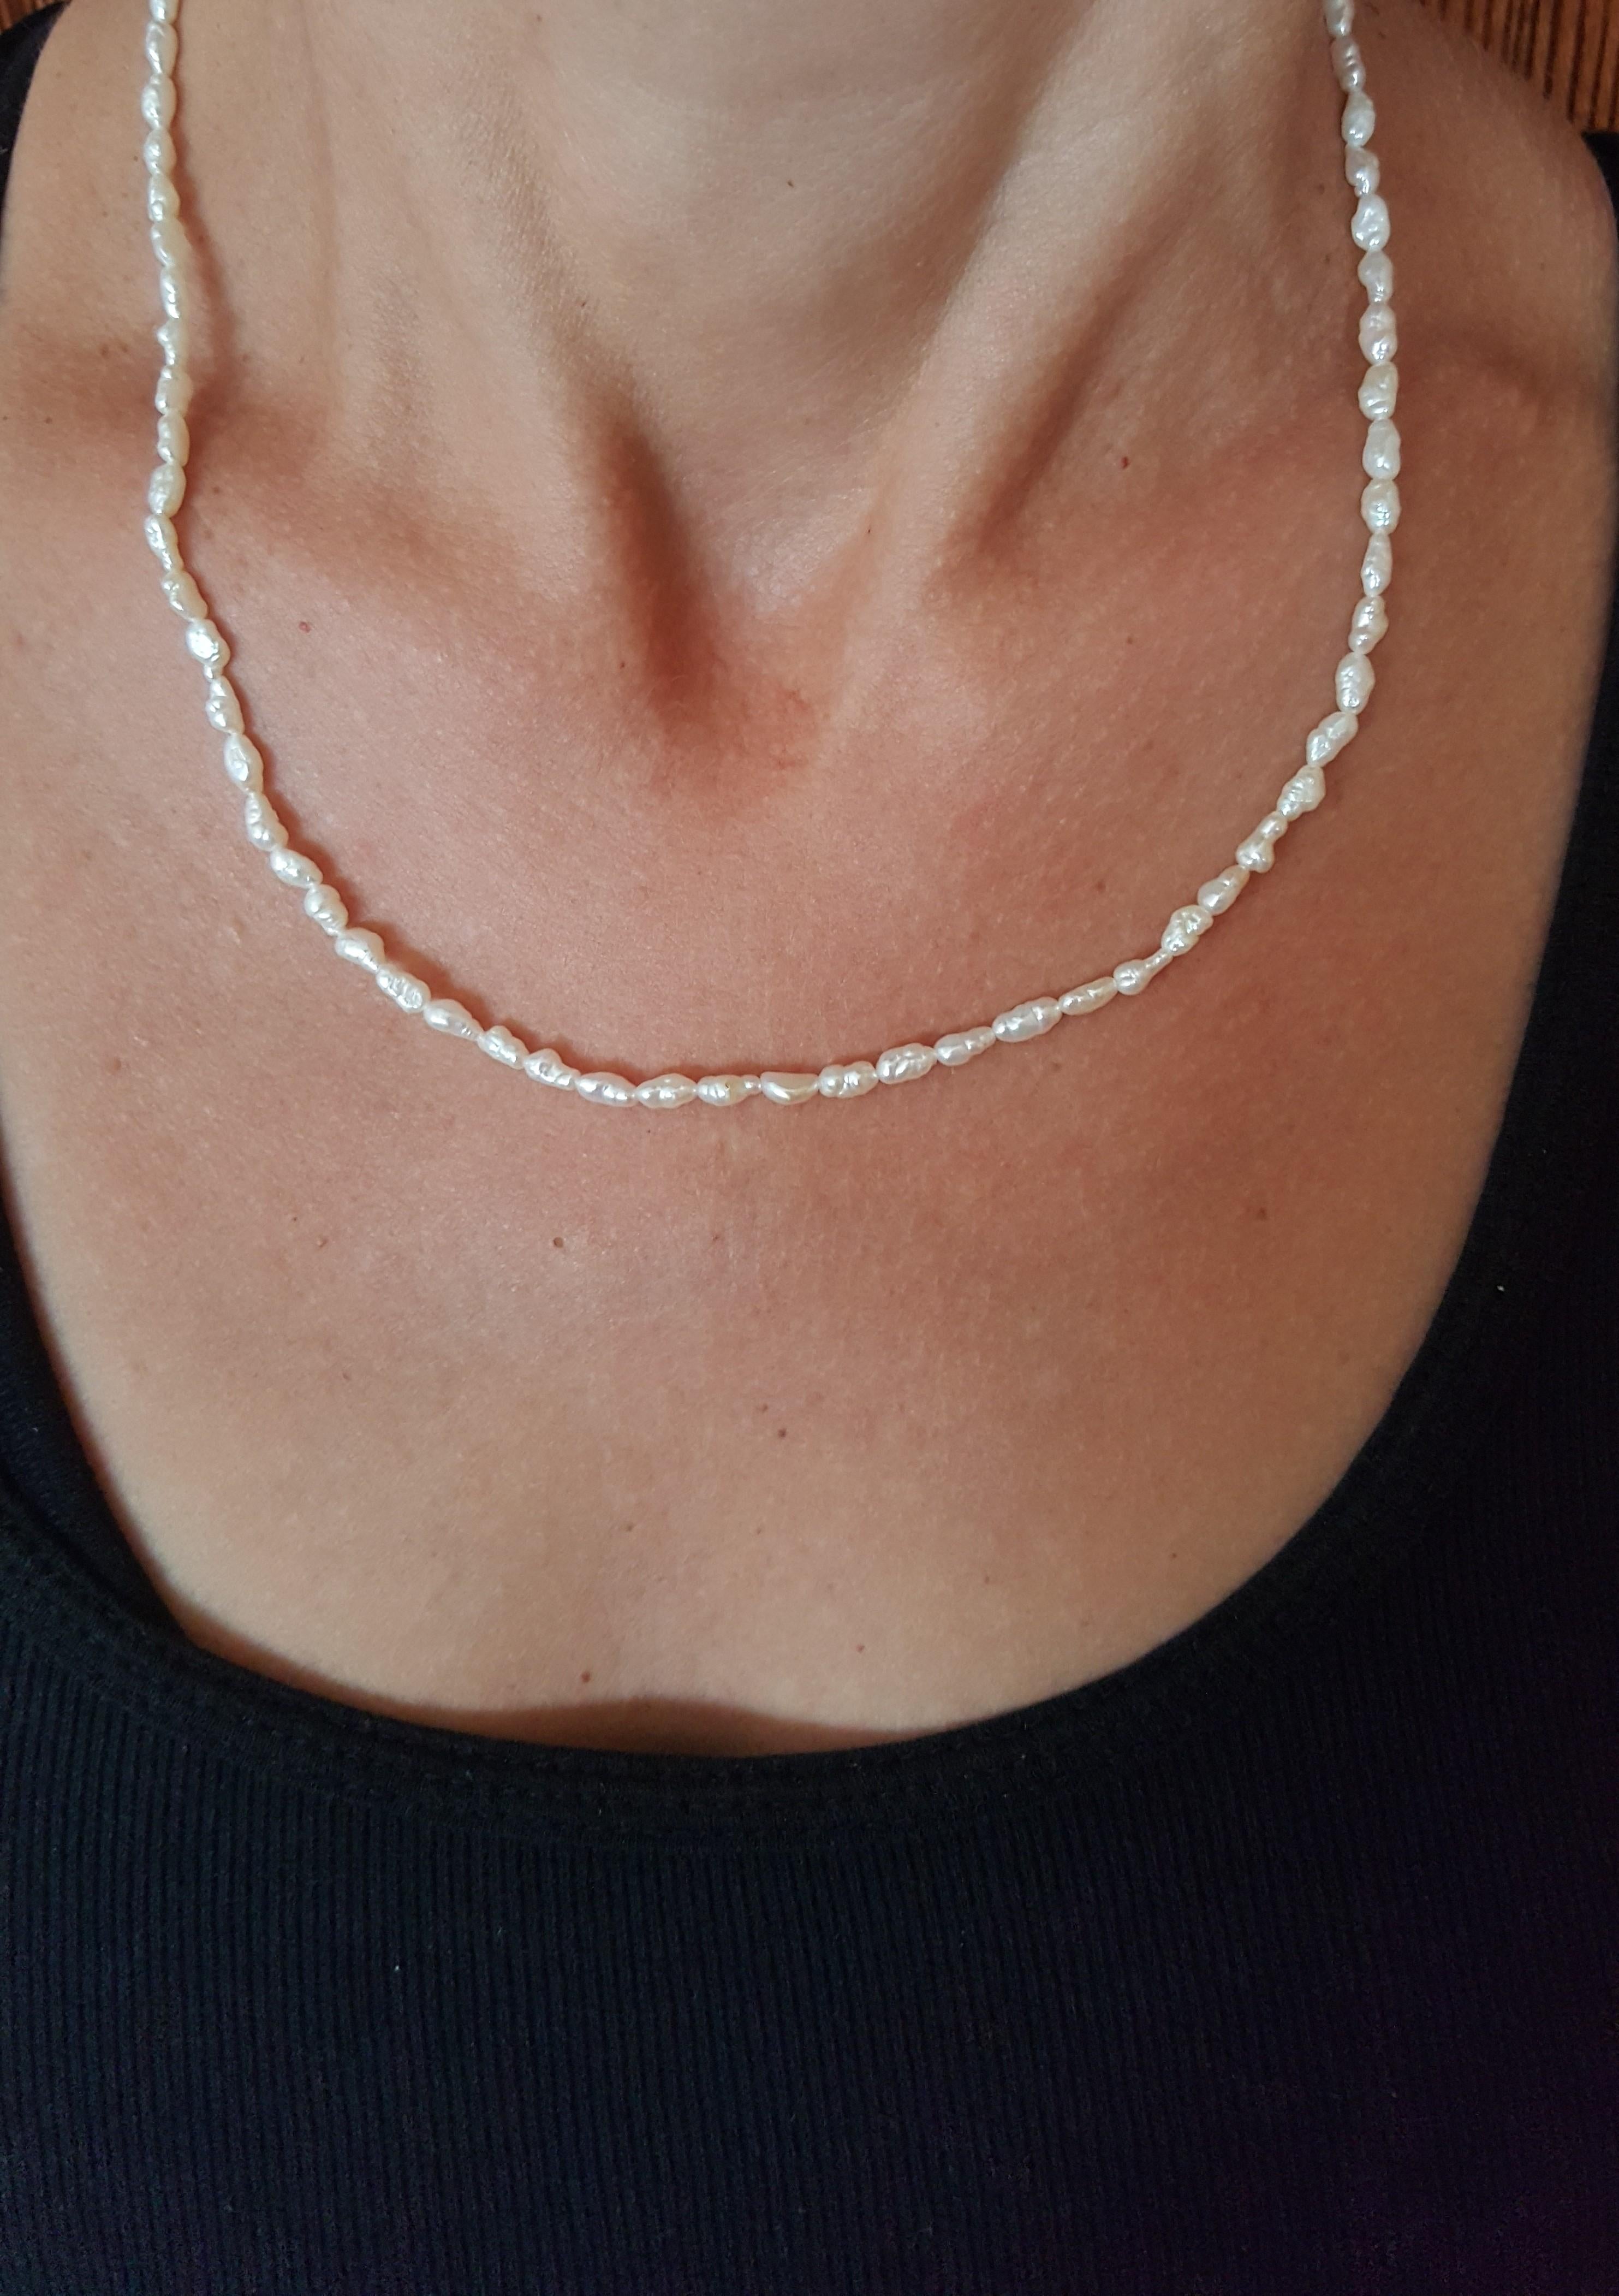 Cordon de 18 pouces de perles d'eau douce blanches avec fermoir en or jaune 14kt. Les perles de 3 mm ont une nacre propre et lustrée. Ce joli brin peut être porté séparément ou superposé à d'autres brins de collier. N'hésitez pas à nous contacter si